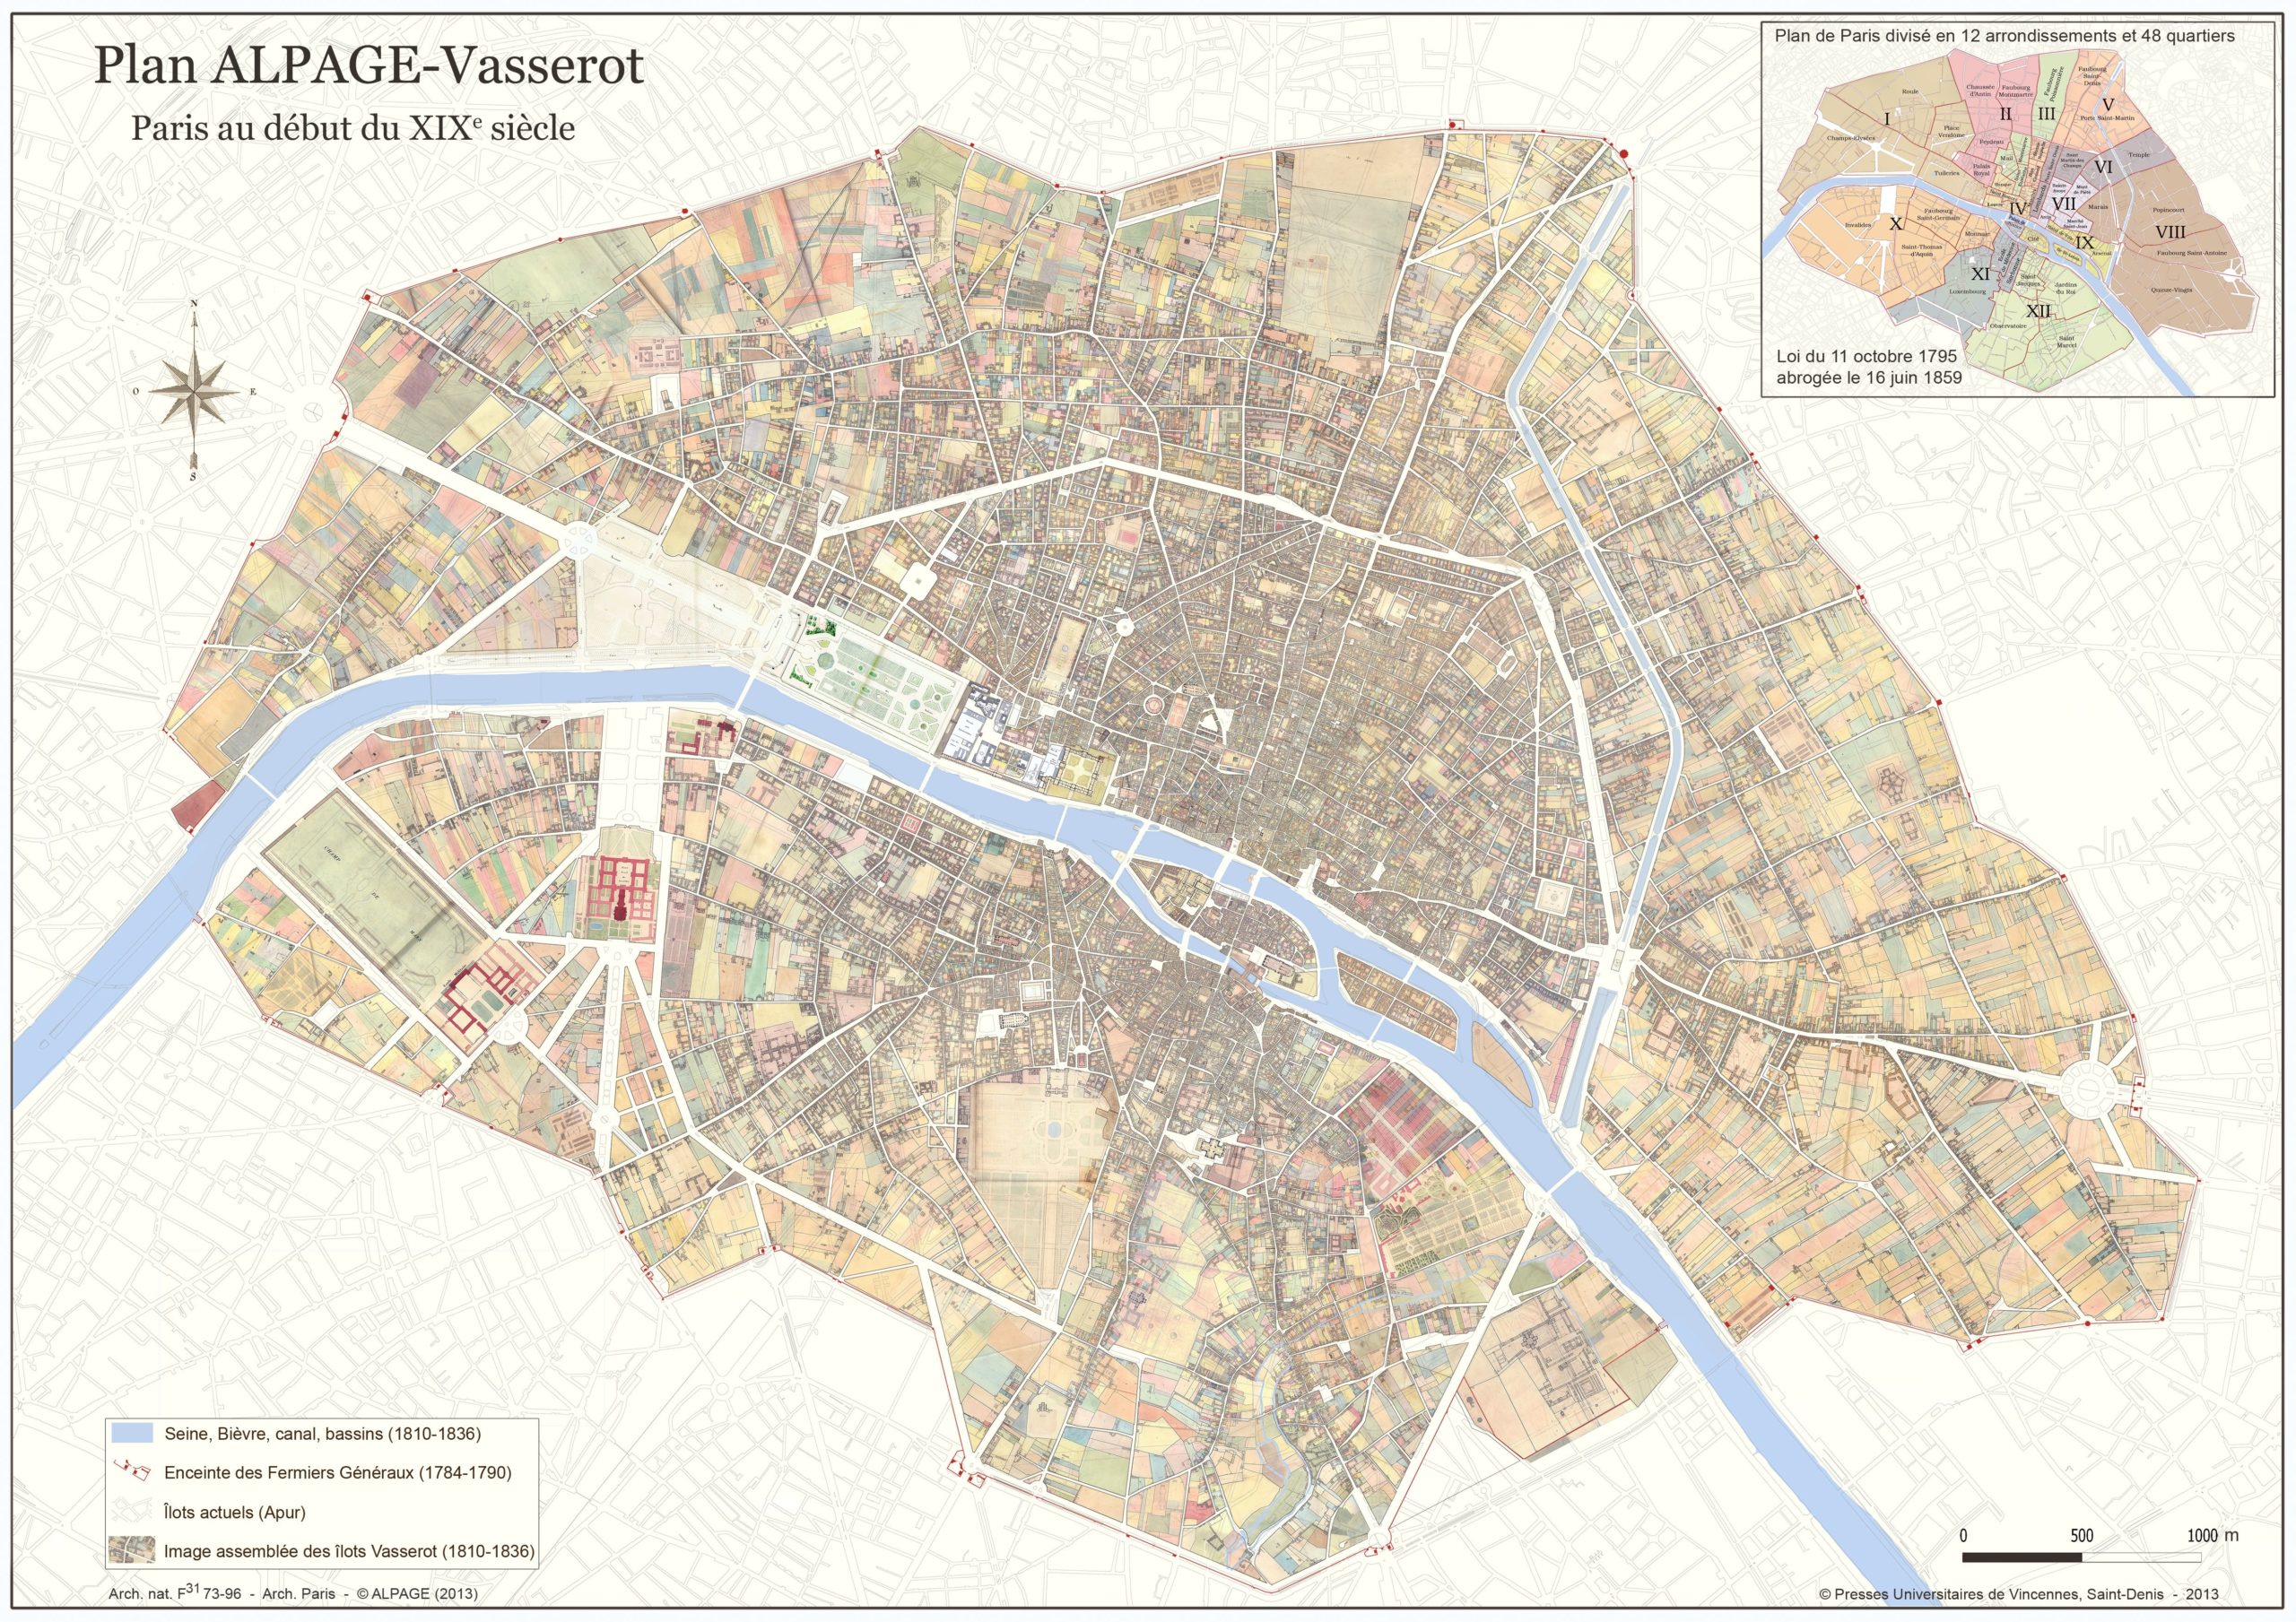 Plan Alpage-Vasserot - Paris au début du XIXe siècle